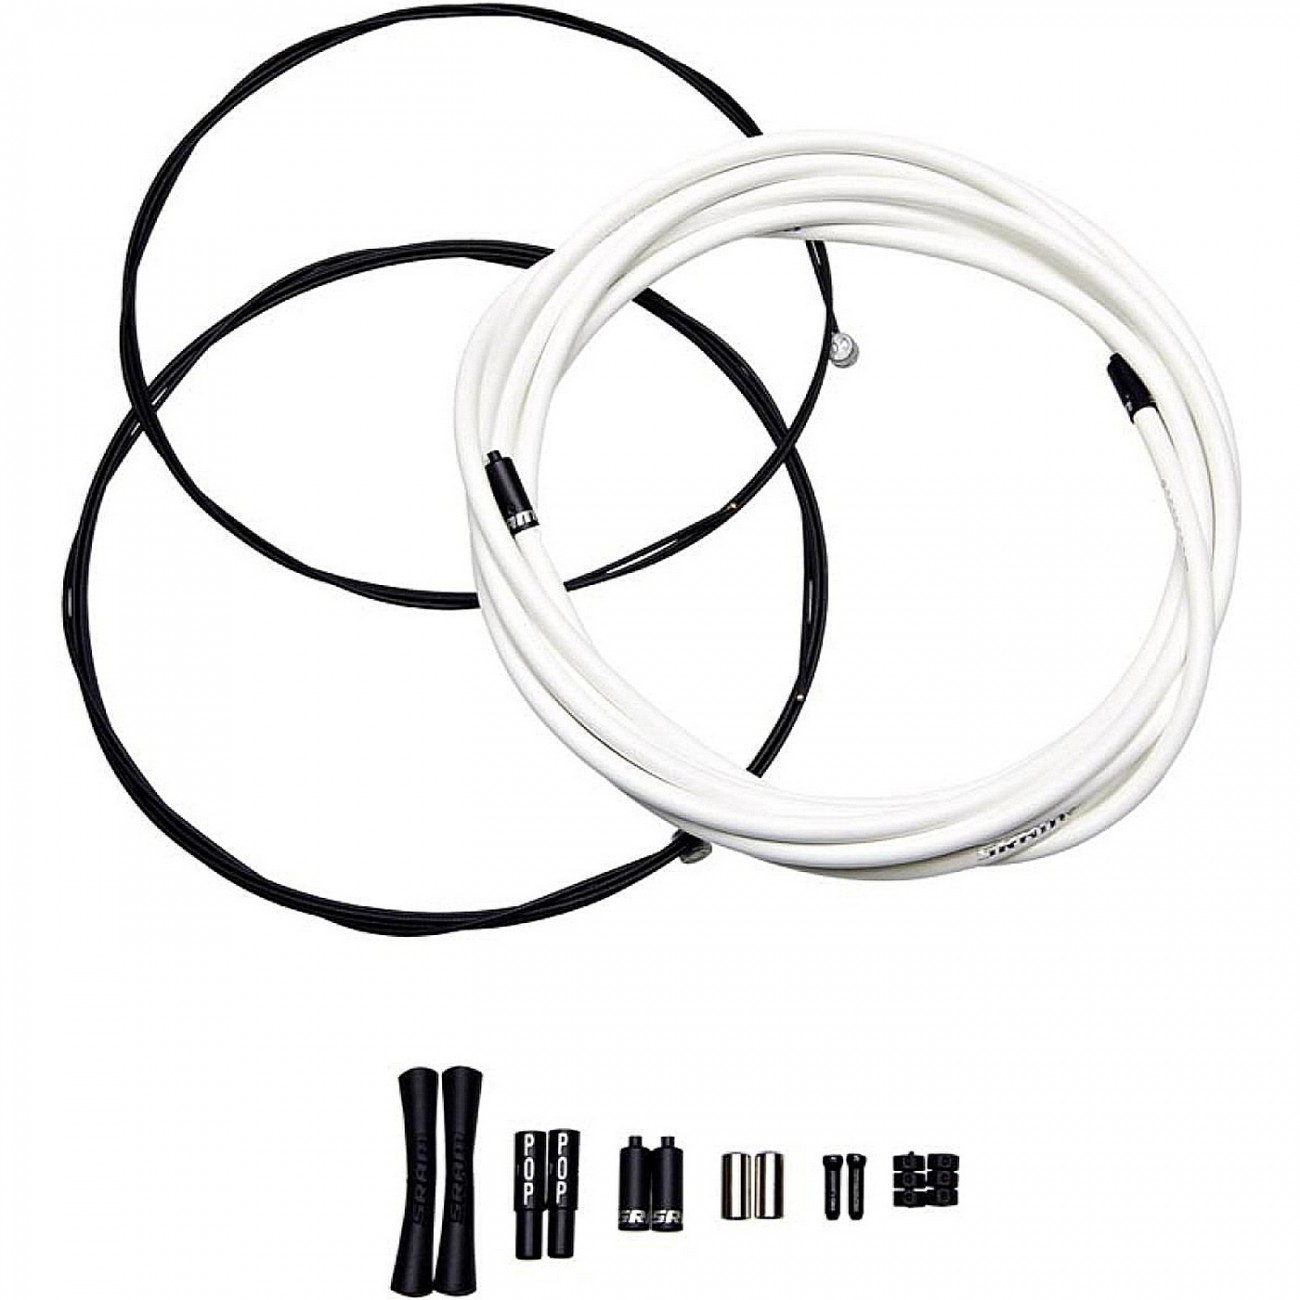 Sram bremszug kit slickwire pro road 1x 850mm 1x 1750mm 1 5mm 5mm kevlar blanco - 1